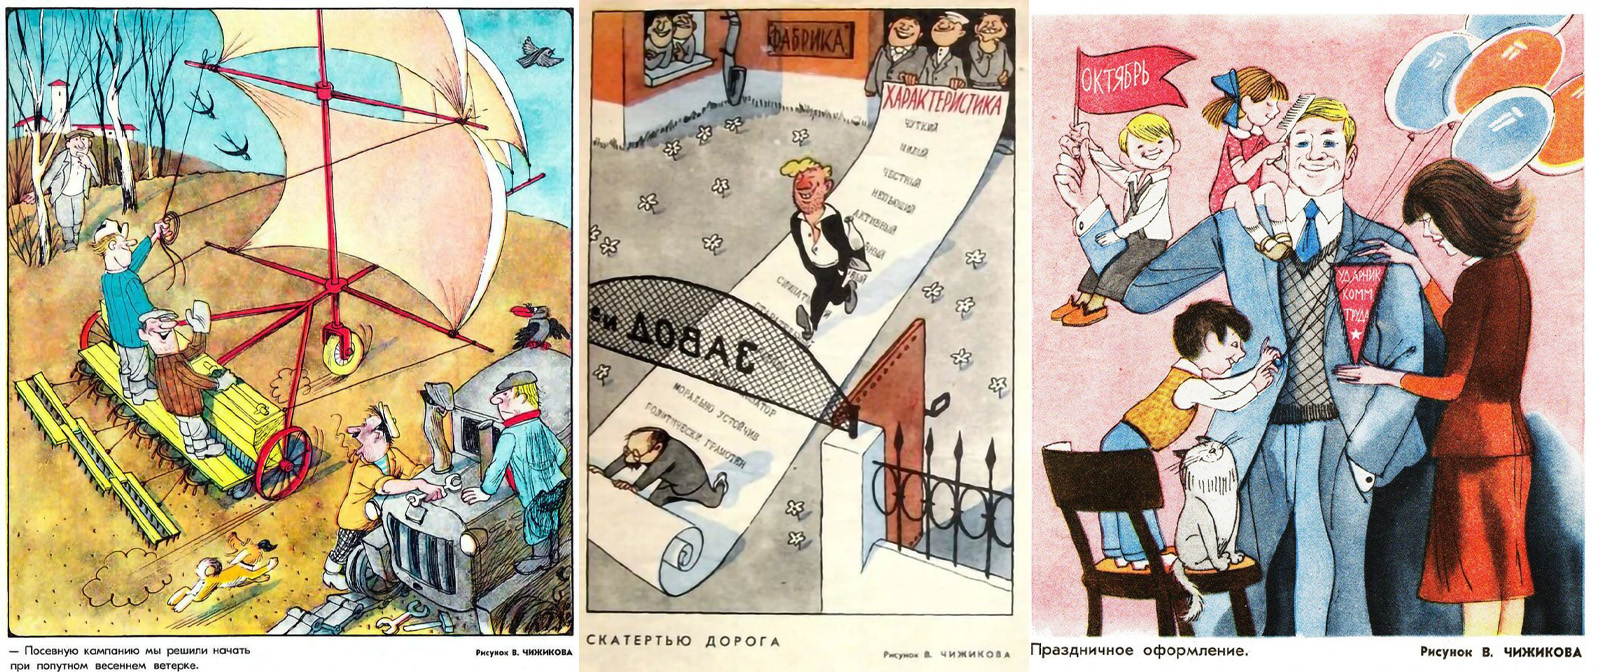 Карикатуры «для взрослых» от Виктора Чижикова, про которые далеко не все знают